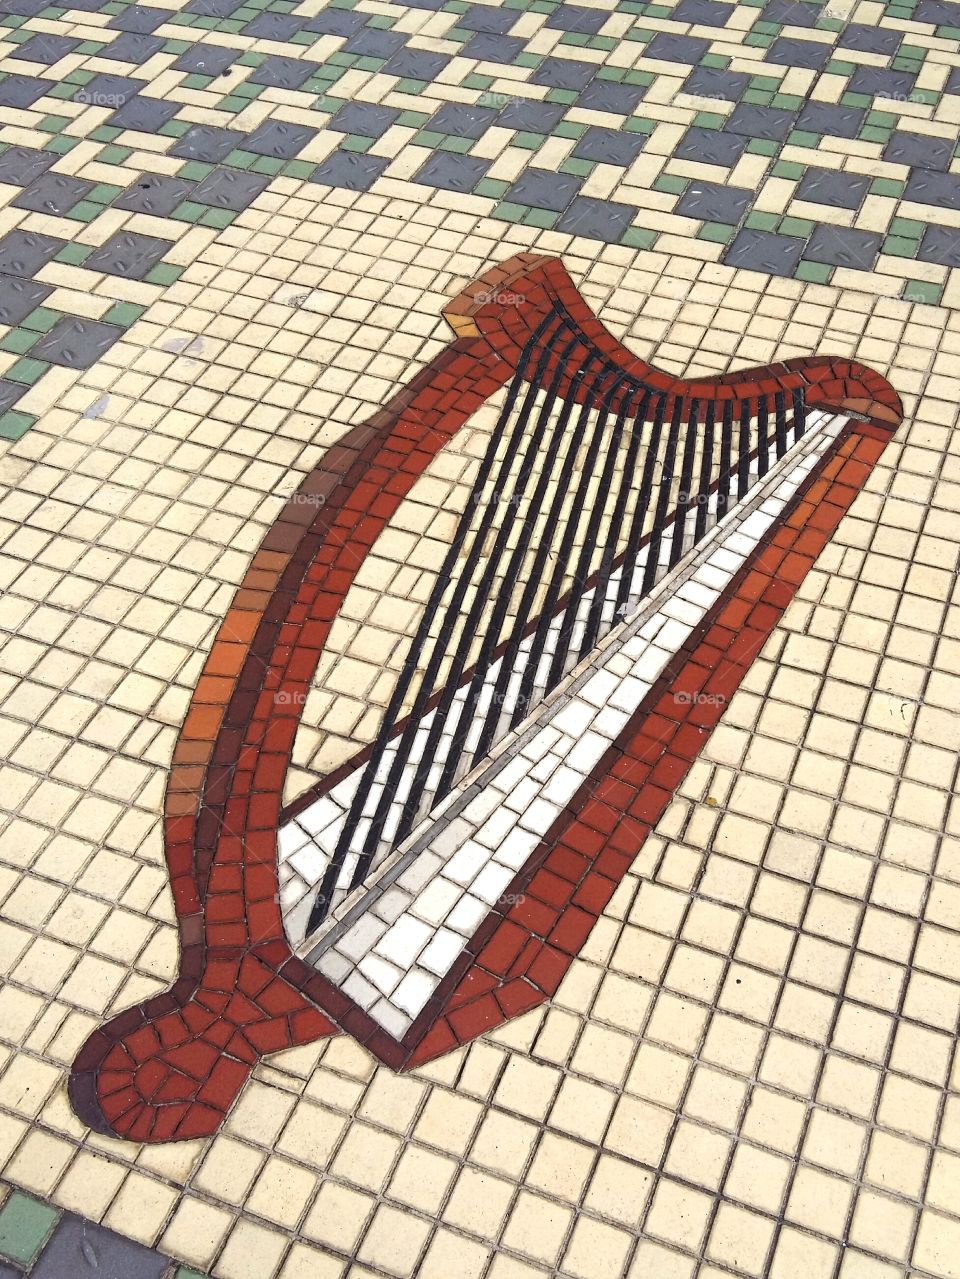 Irish harp mosaic on a floor in Dublin.